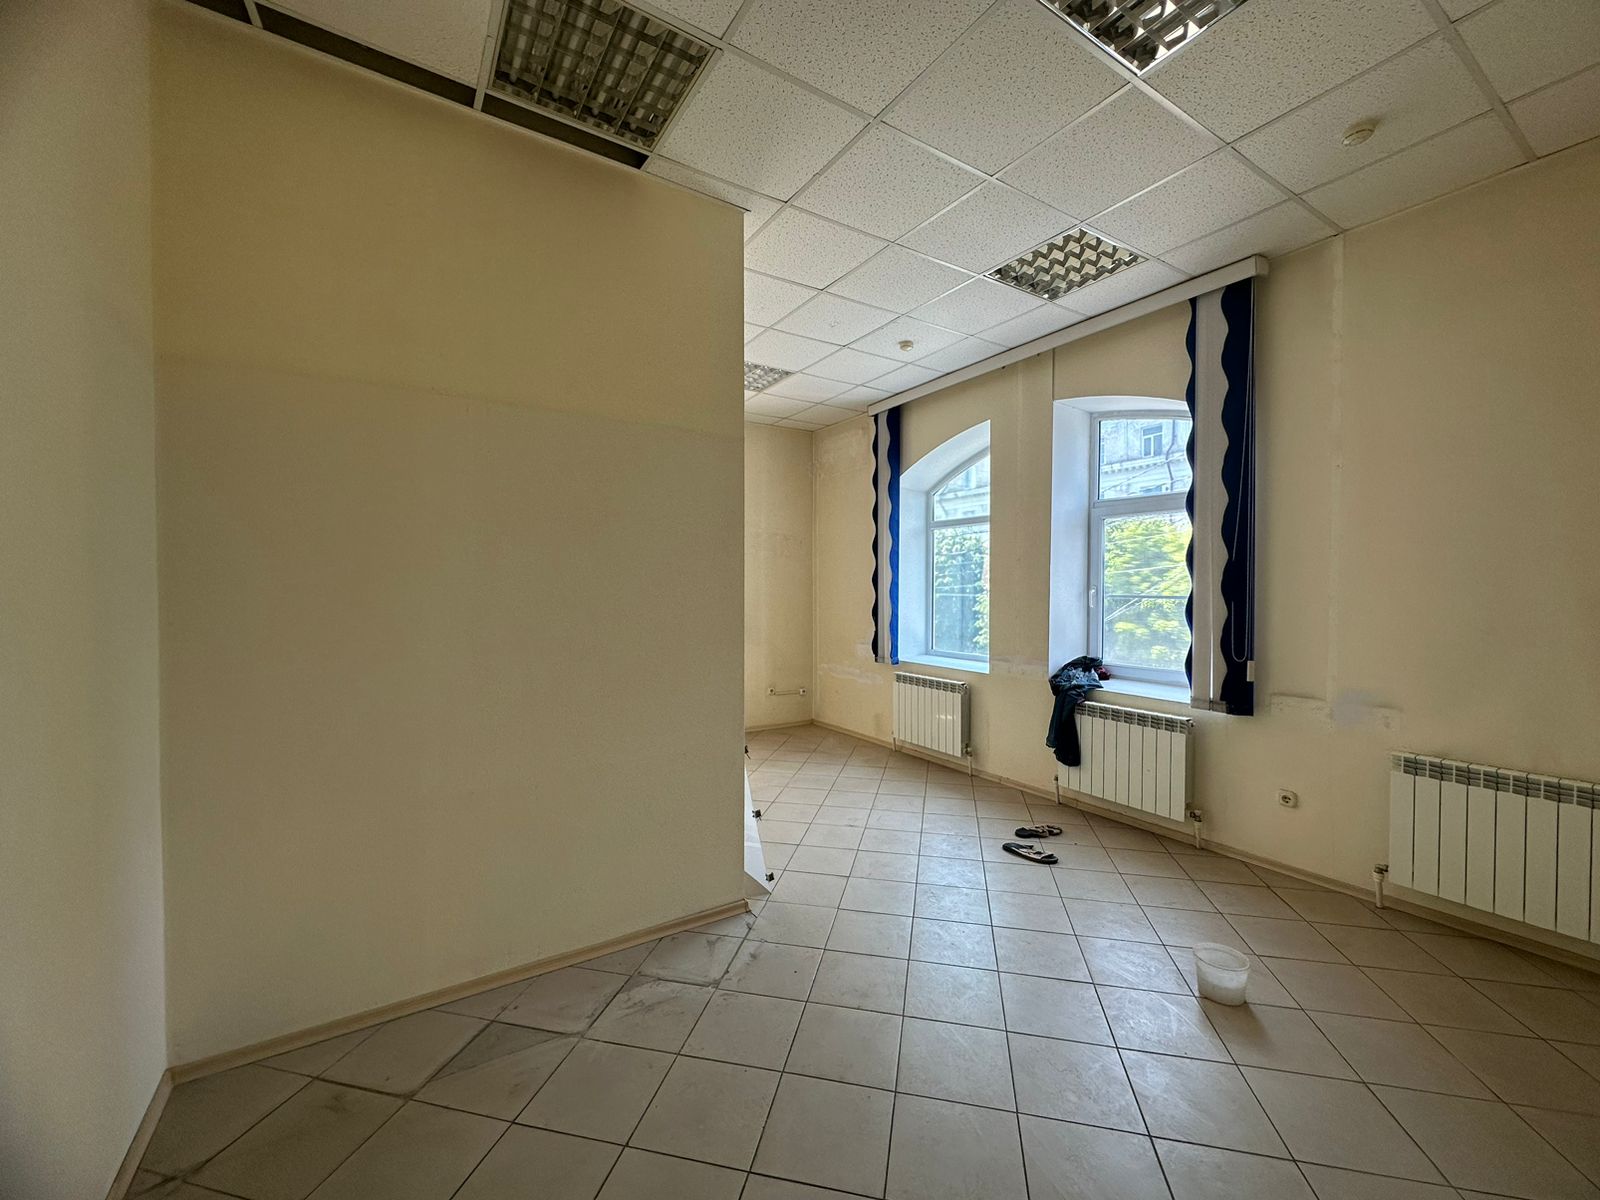 Предлагаем к аренде помещение на 2ом этаже по ул. Карла Маркса д.53, общей площадью 140 м², напрямую от собственника._6